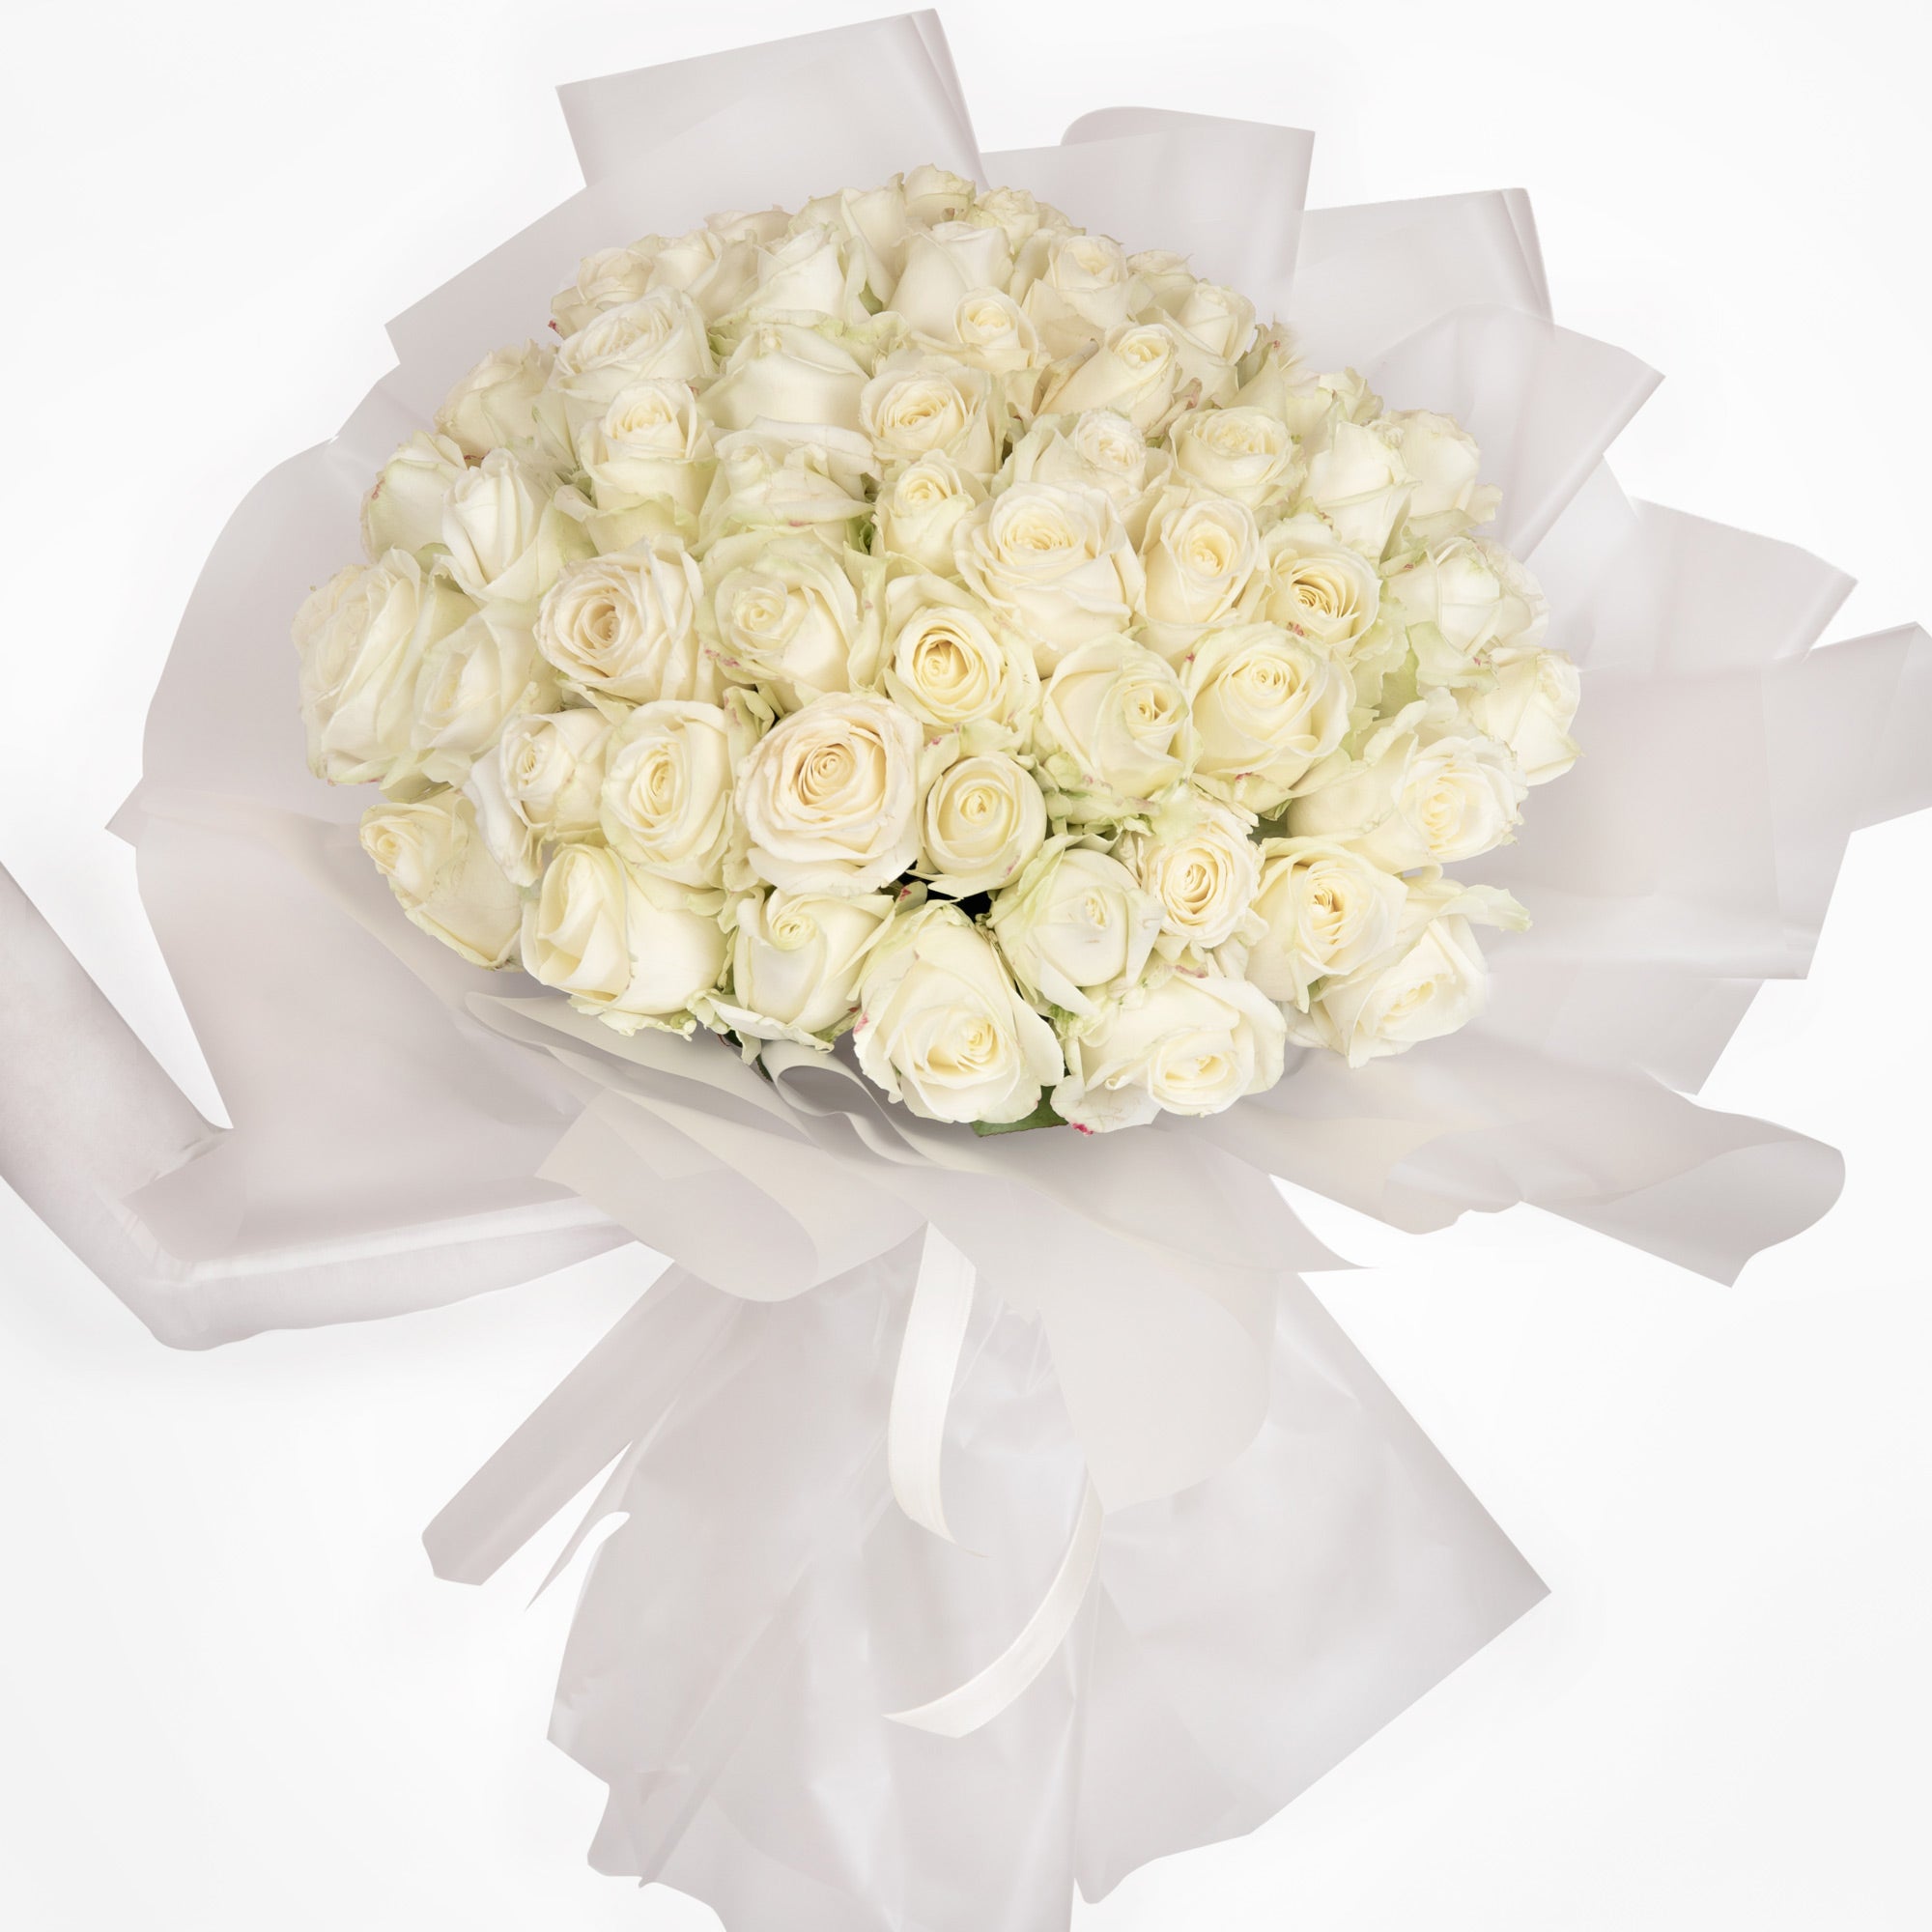 Buchet 65 trandafiri albi, 2